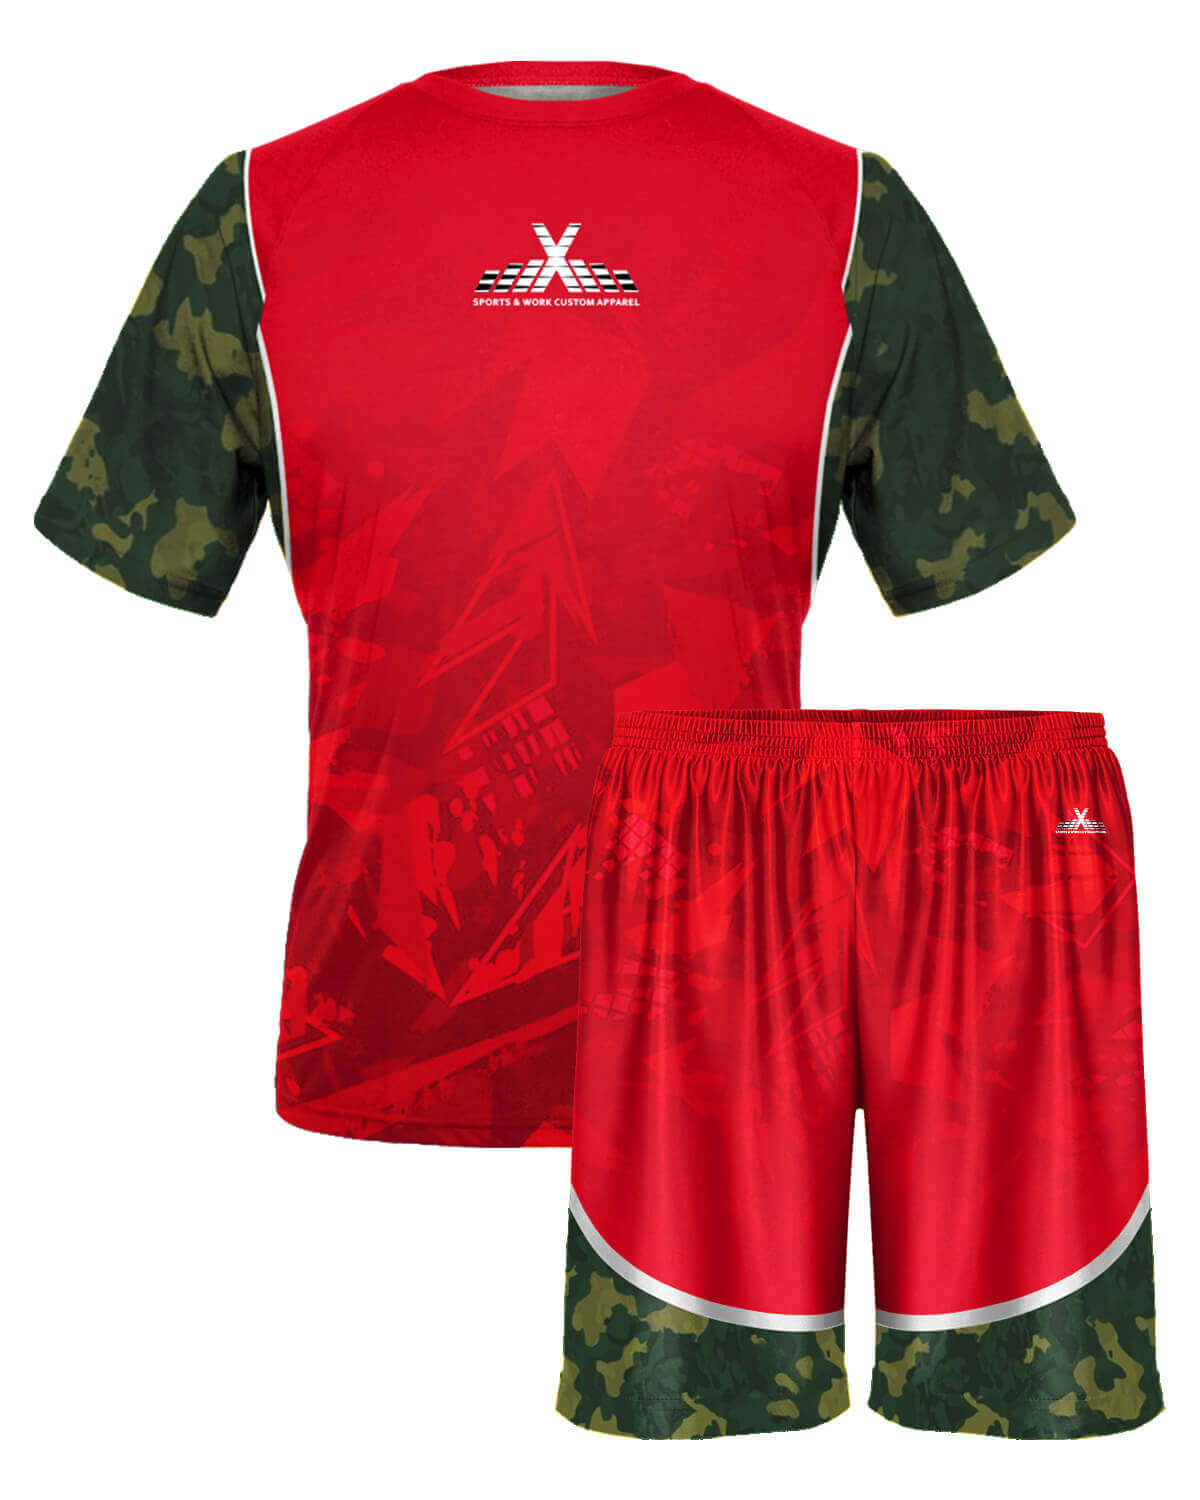 Shop Custom Men Sports Team Uniform By AthleisureX